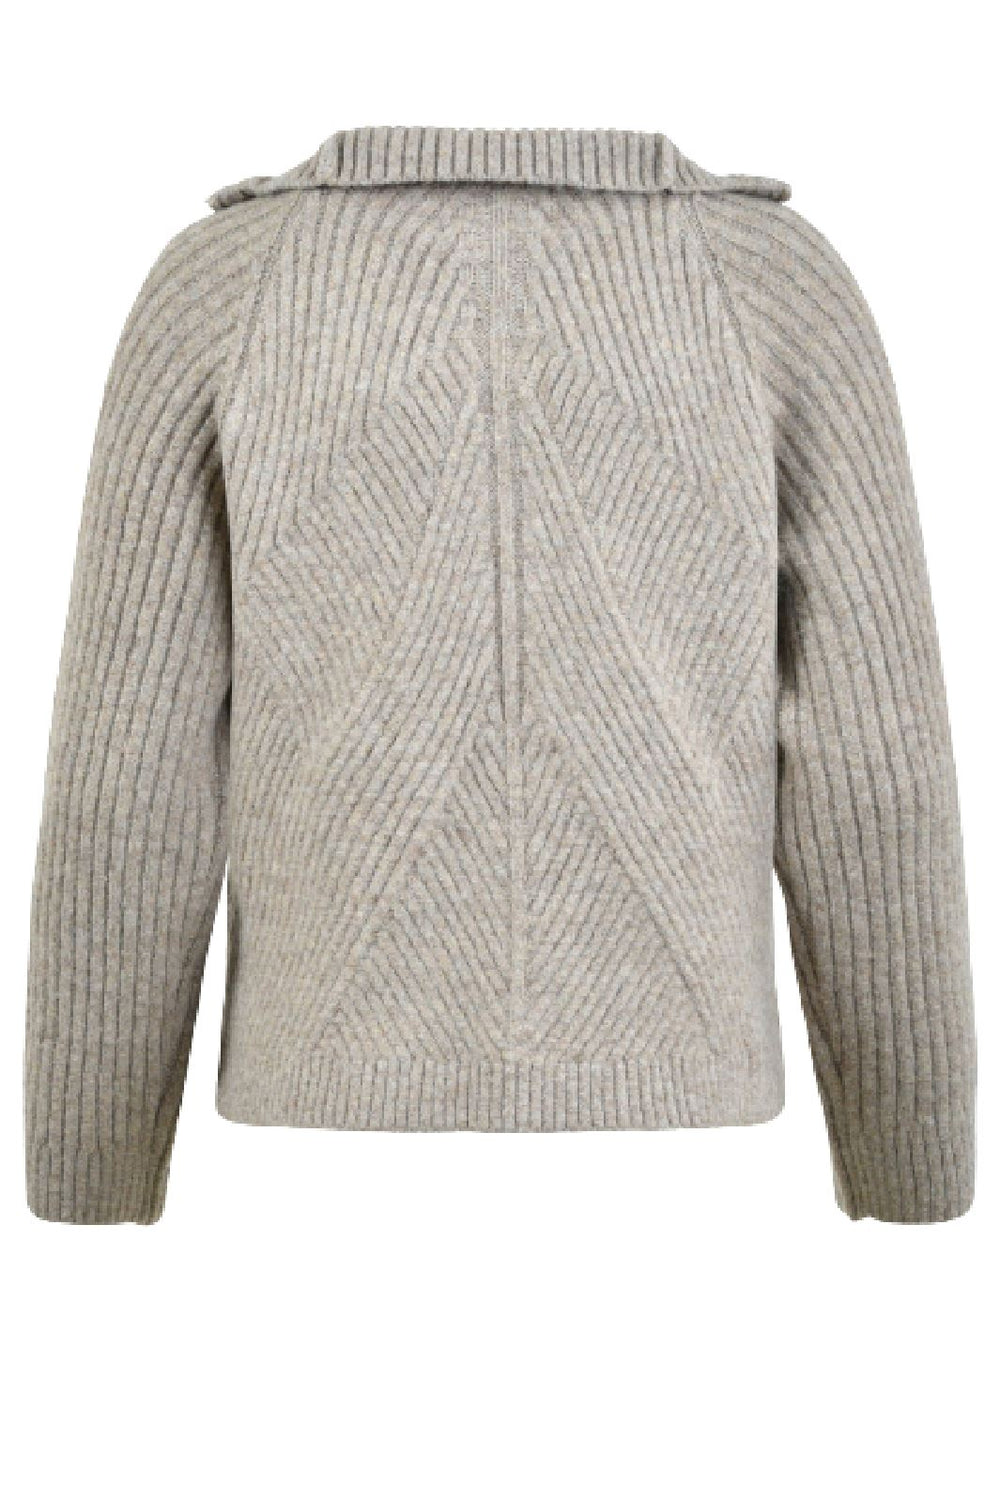 Sofie Schnoor - Snos416 Sweater - Warm Grey Strikbluser 